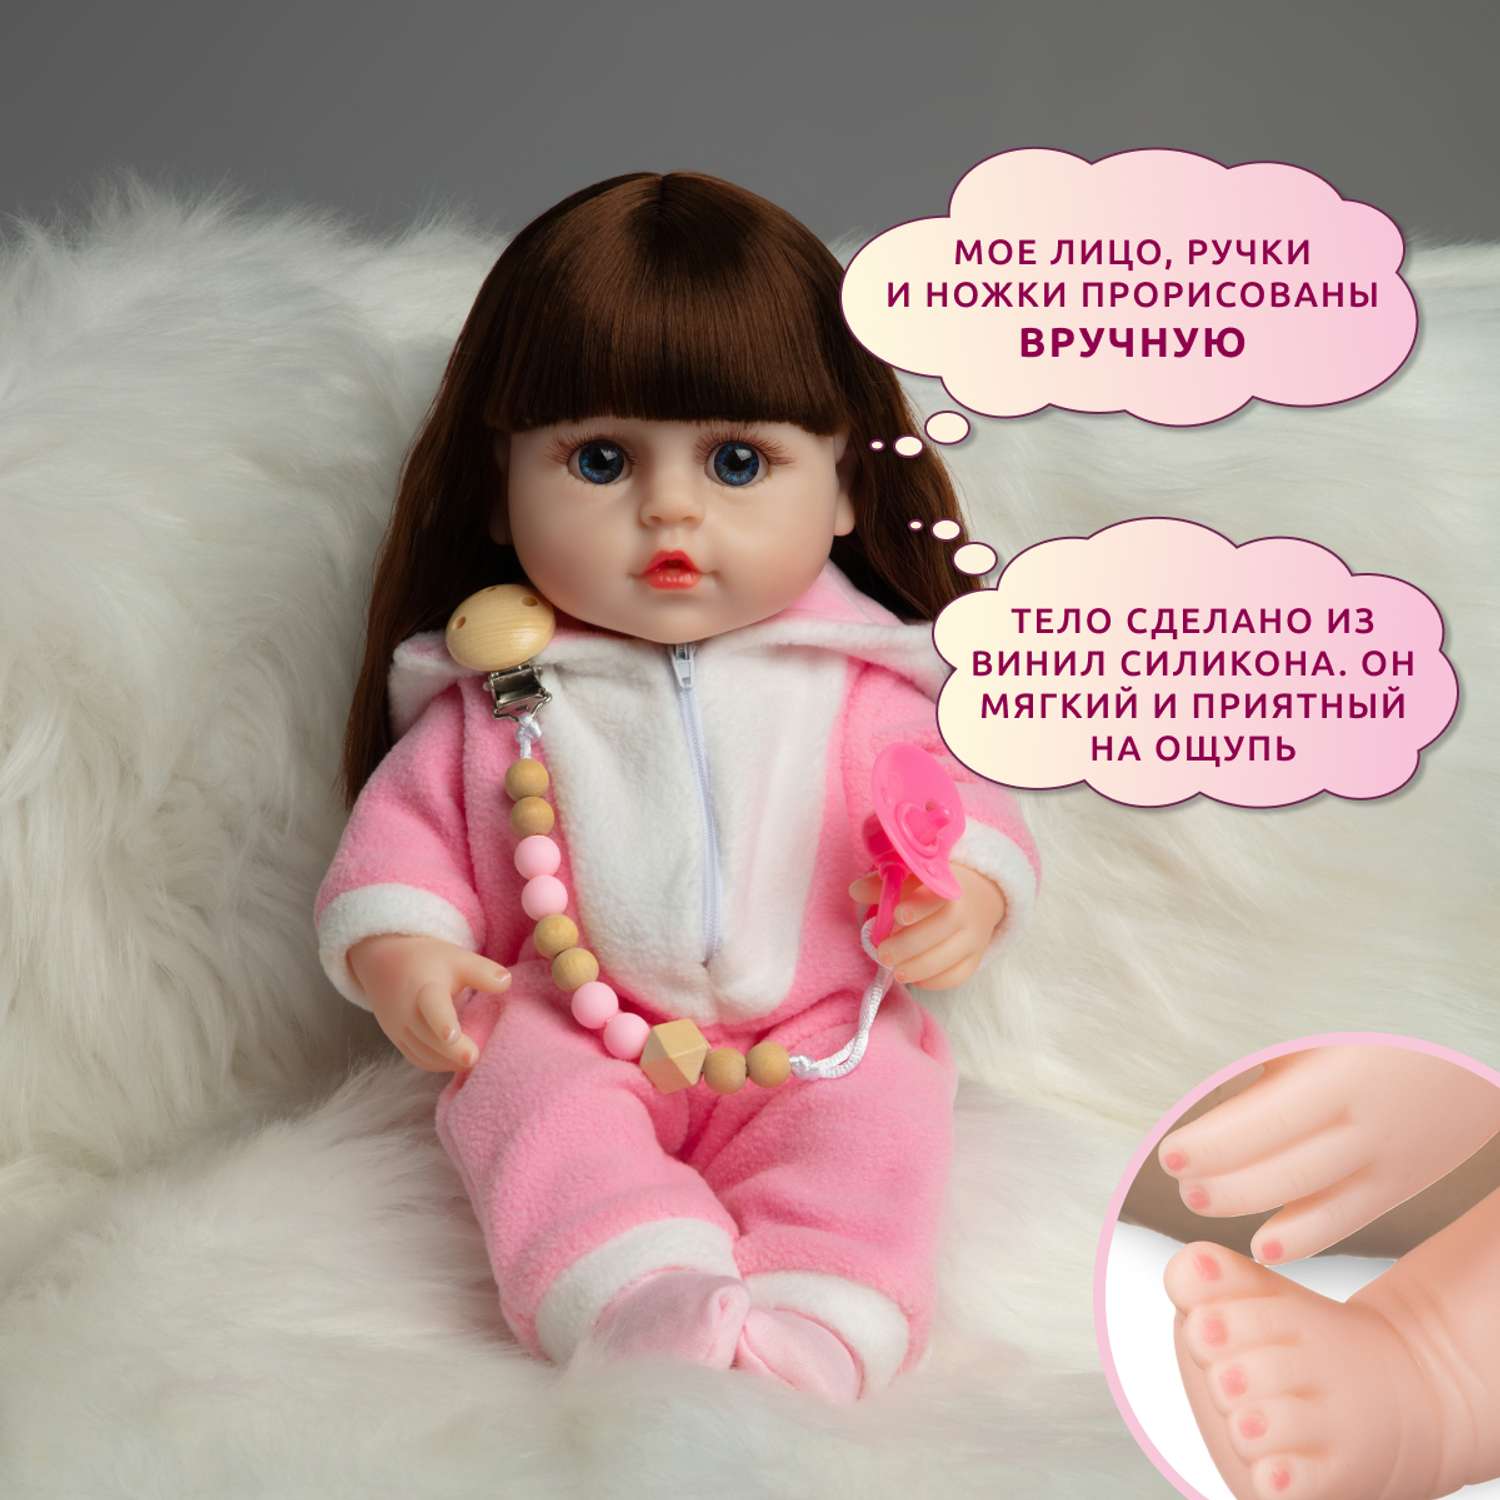 Кукла Реборн QA BABY Яна девочка интерактивная Пупс набор игрушки для ванной для девочки 38 см 3812 - фото 9